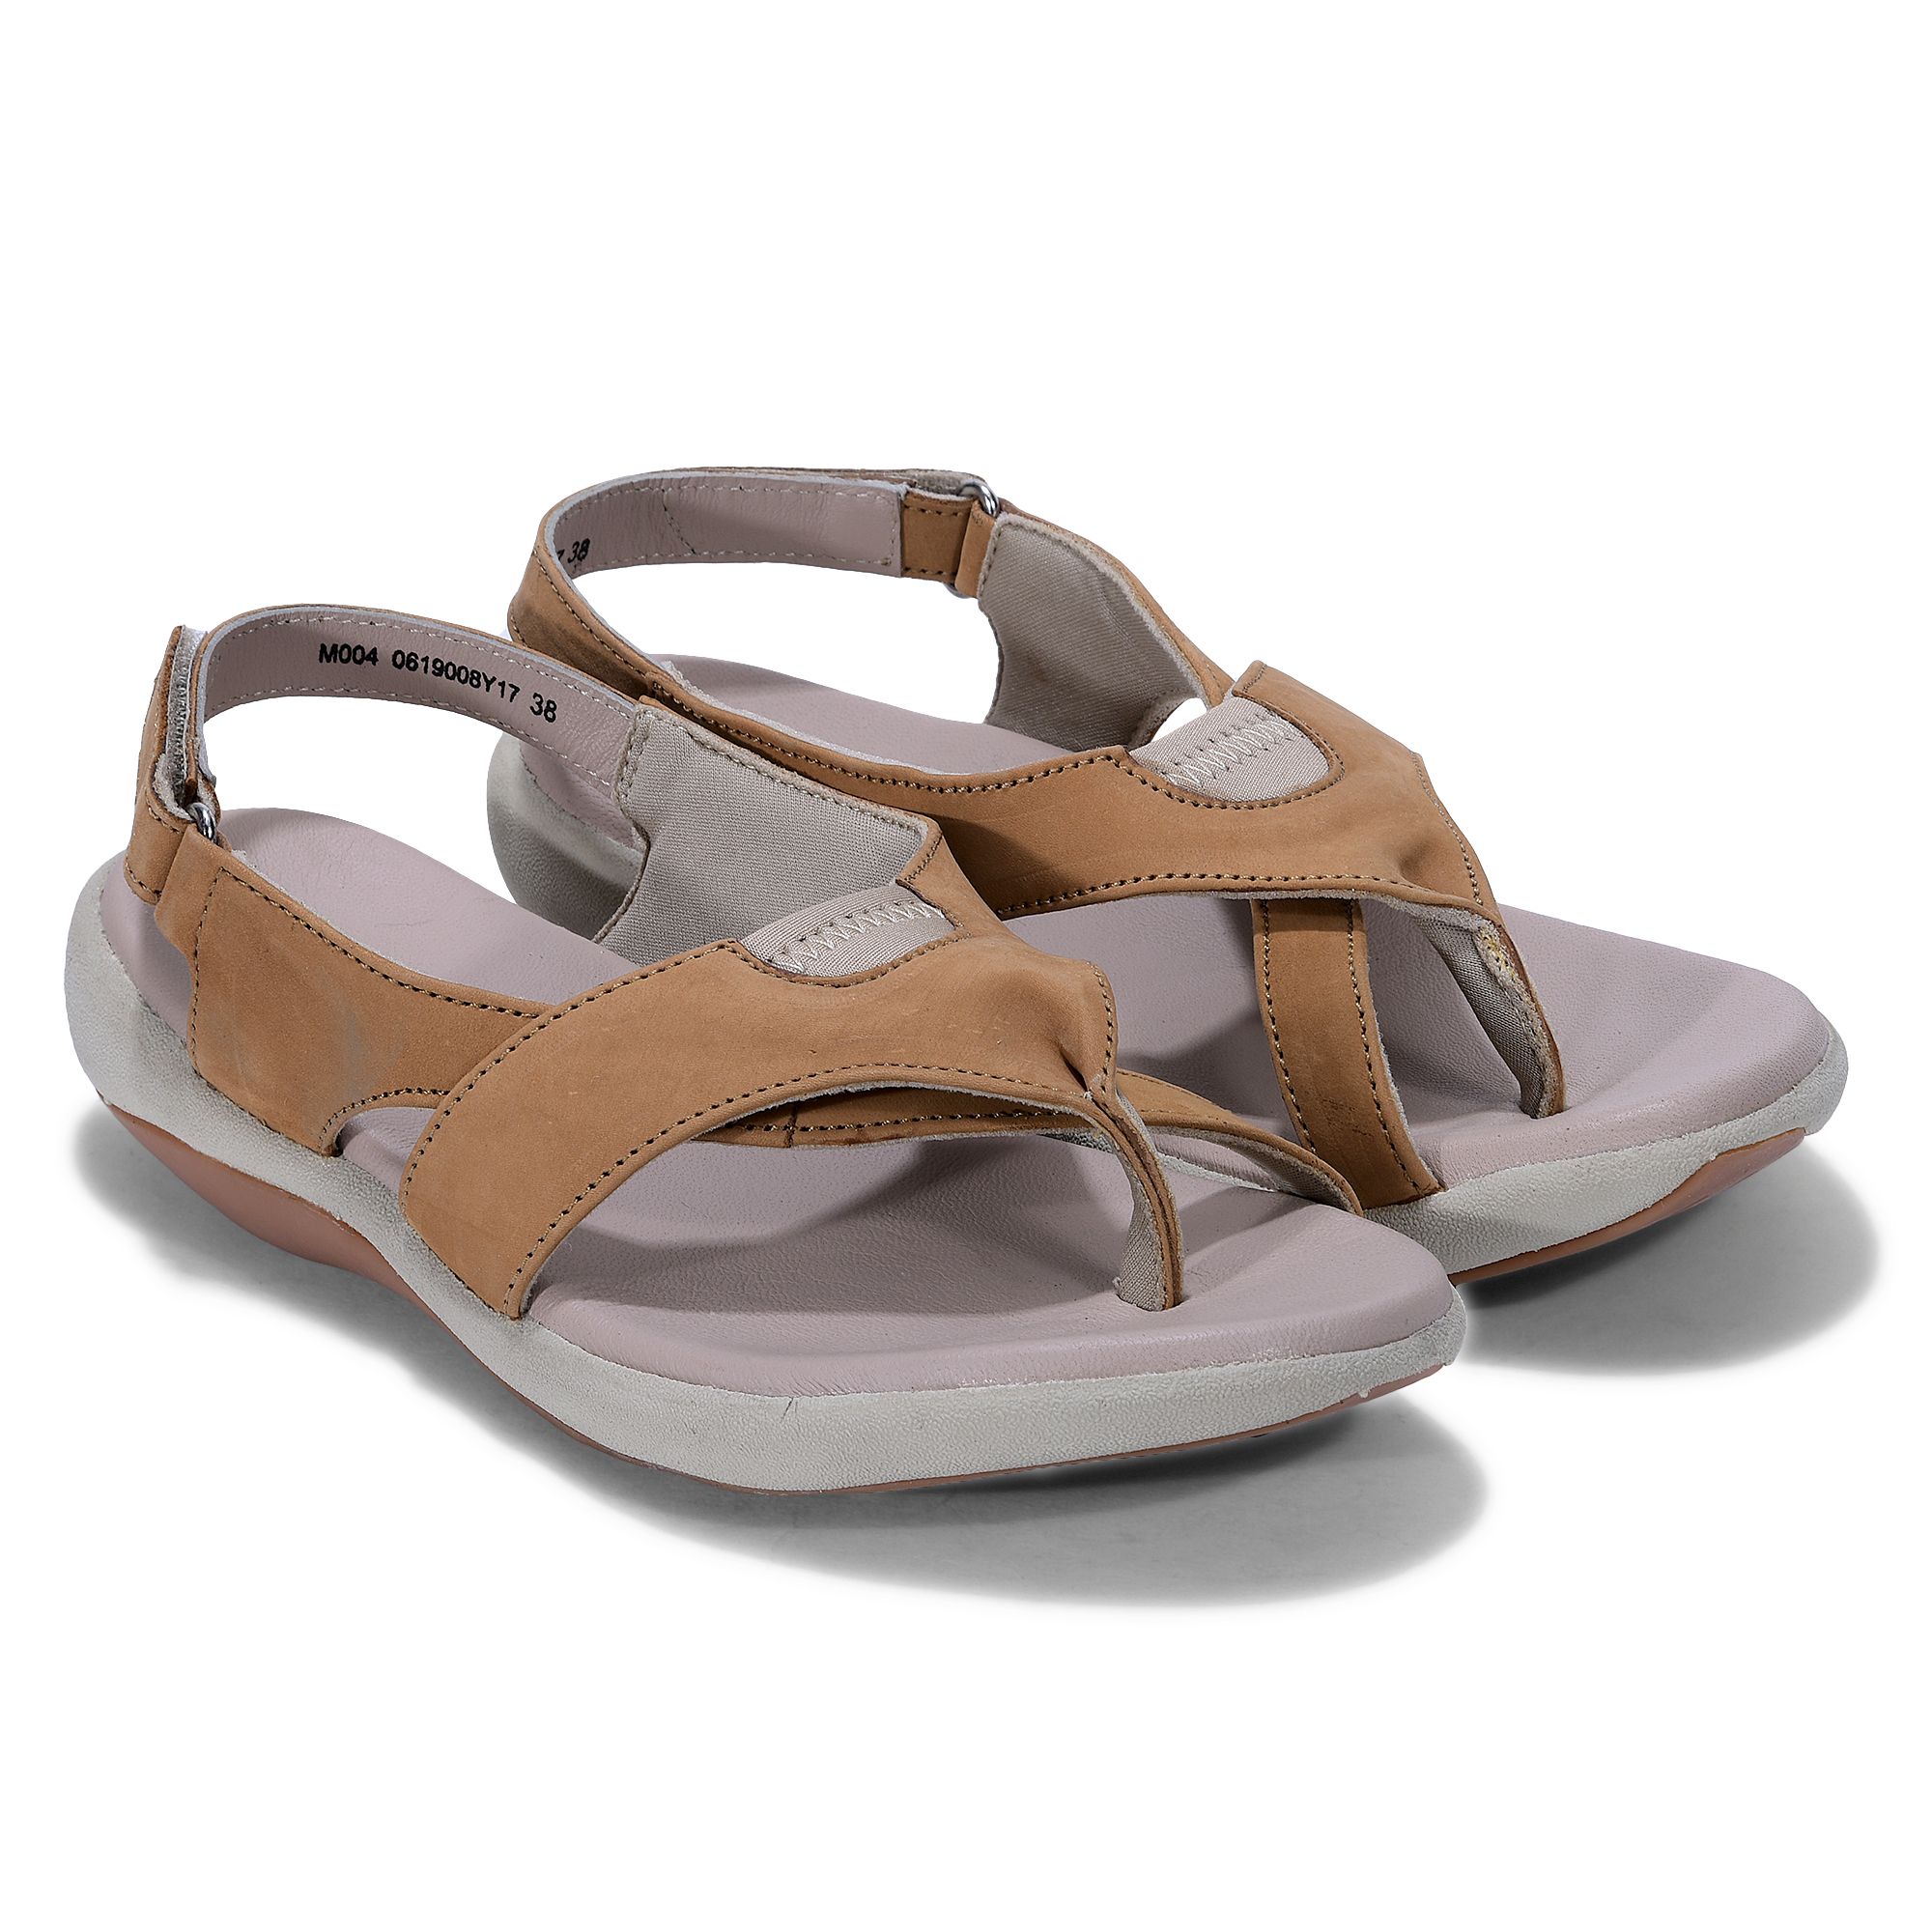 Woodland J9Wue Men's OGD 1036111_Camel_6 Camel Outdoor Sandals - 6 UK (40  EU) (7 US) (OGD 1036111CAMEL) : Amazon.in: Fashion